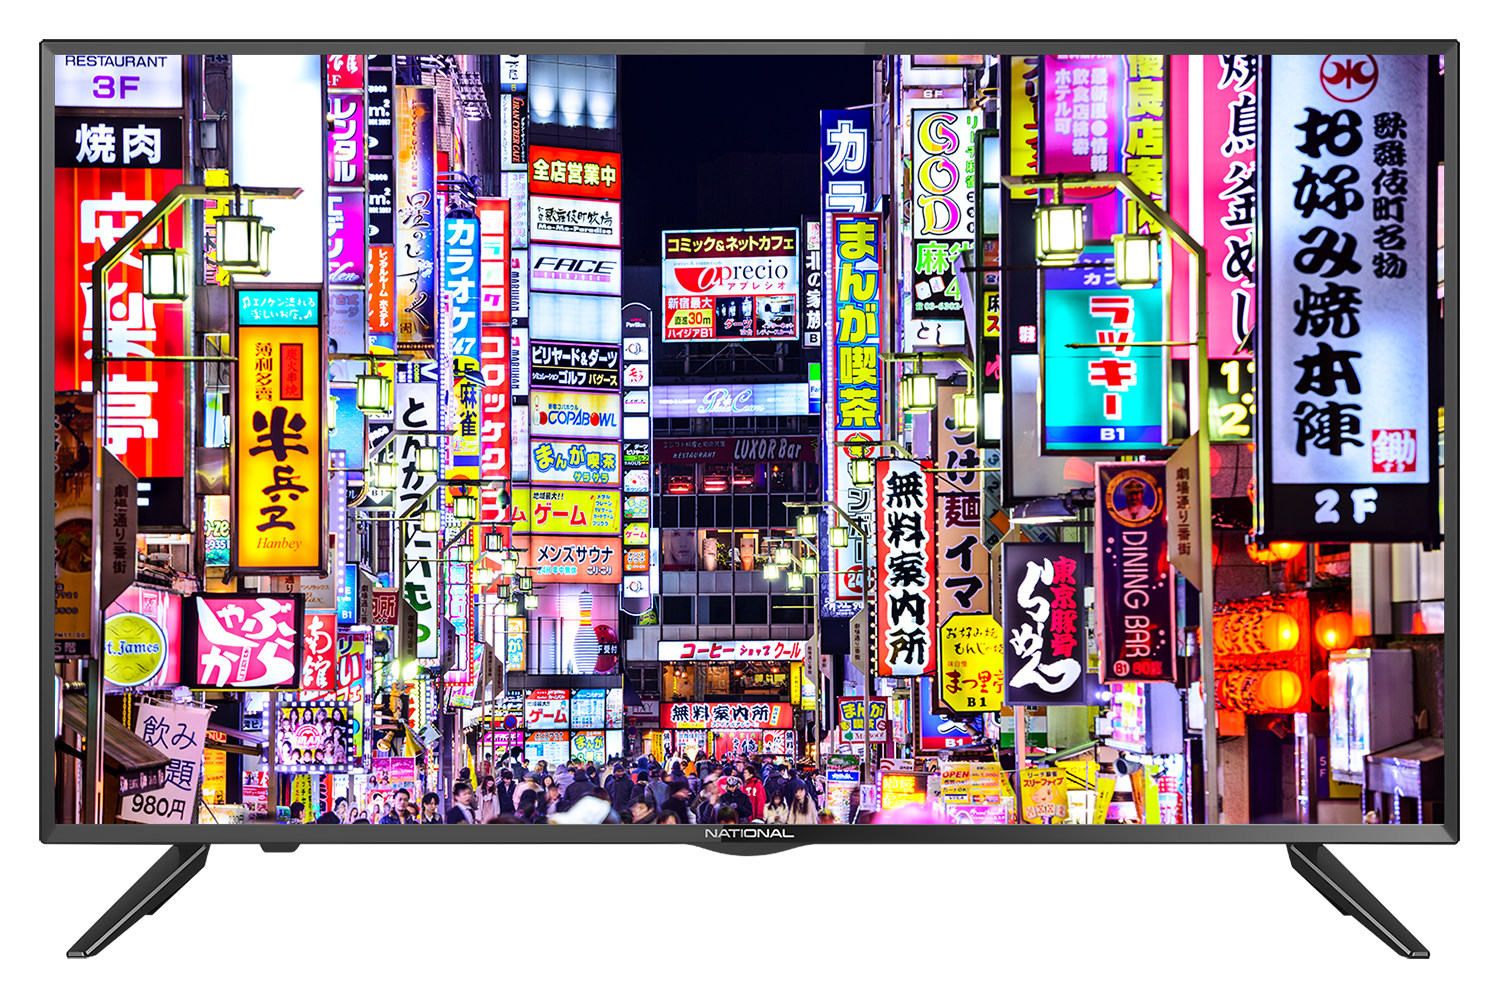 Картинка Телевизор NATIONAL NX-40TF100 по разумной цене купить в интернет магазине mall.su